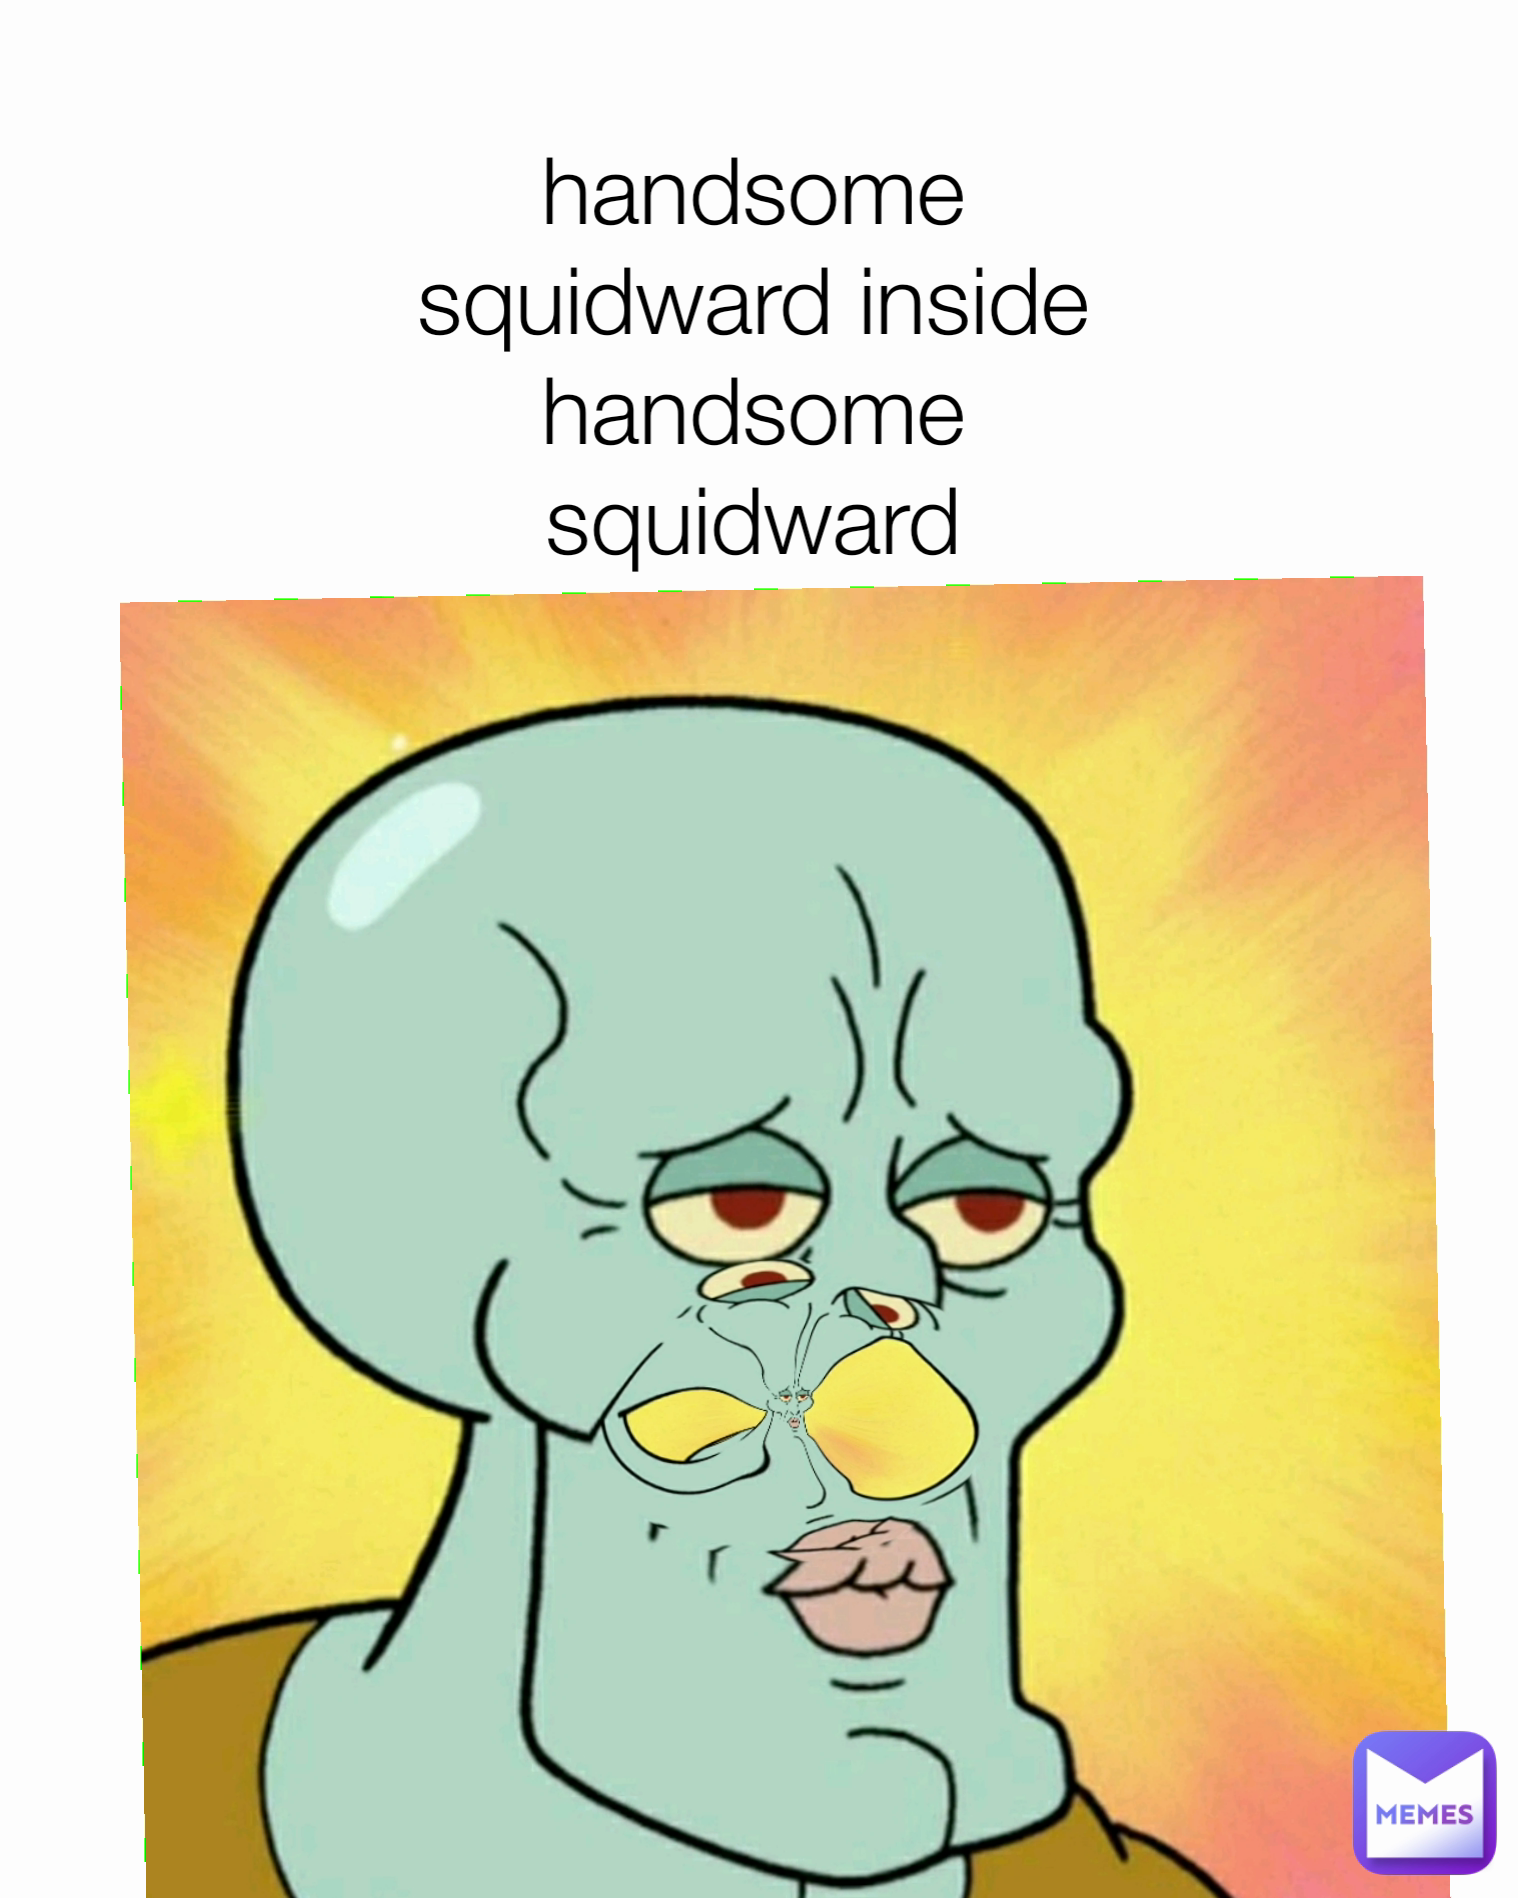 handsome squidward inside handsome squidward